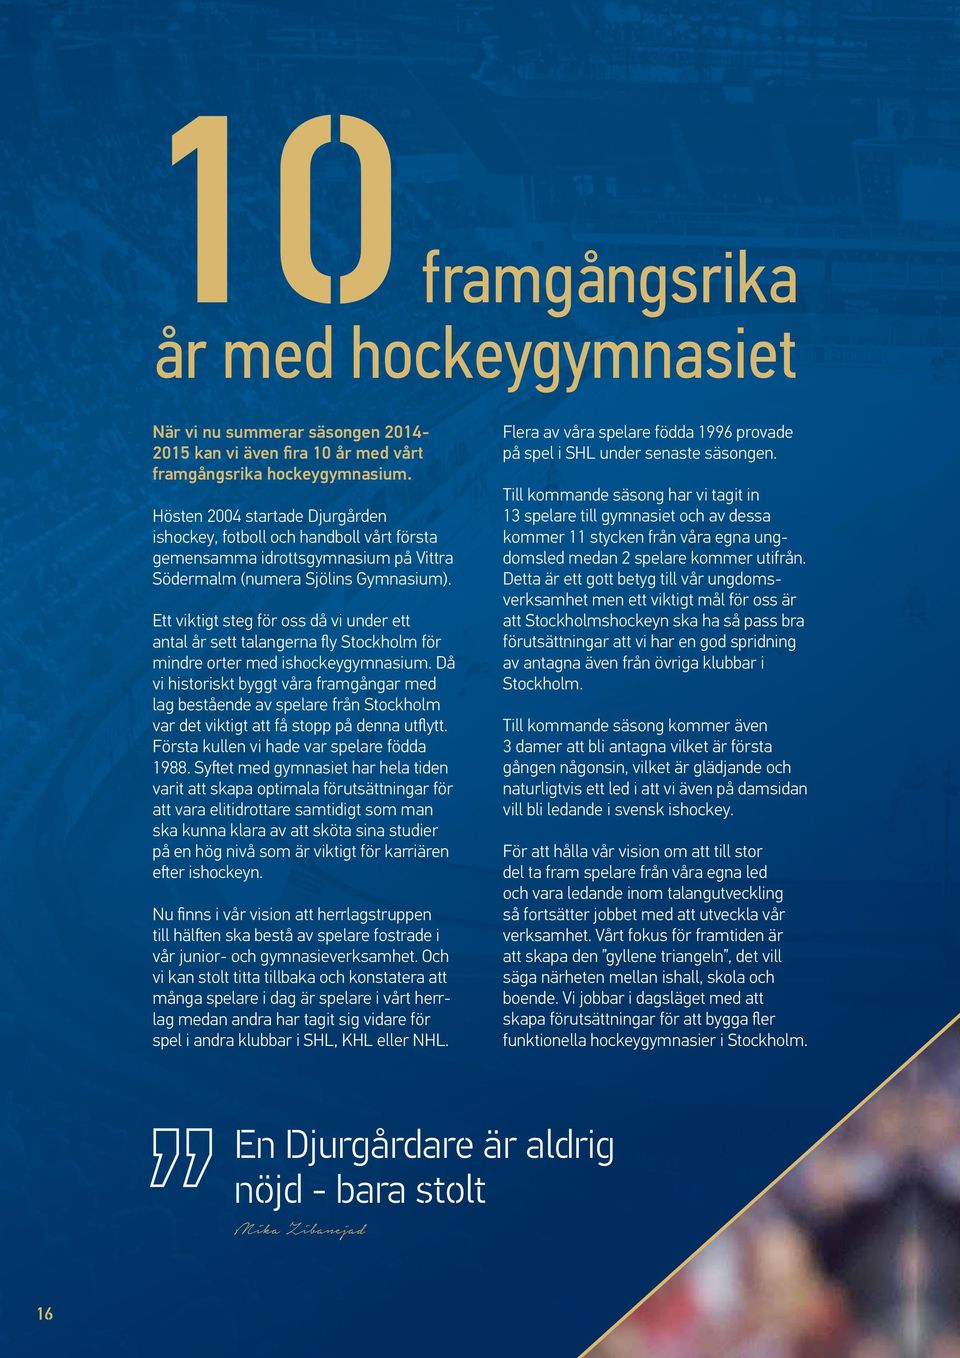 Ett viktigt steg för oss då vi under ett antal år sett talangerna fly Stockholm för mindre orter med ishockeygymnasium.